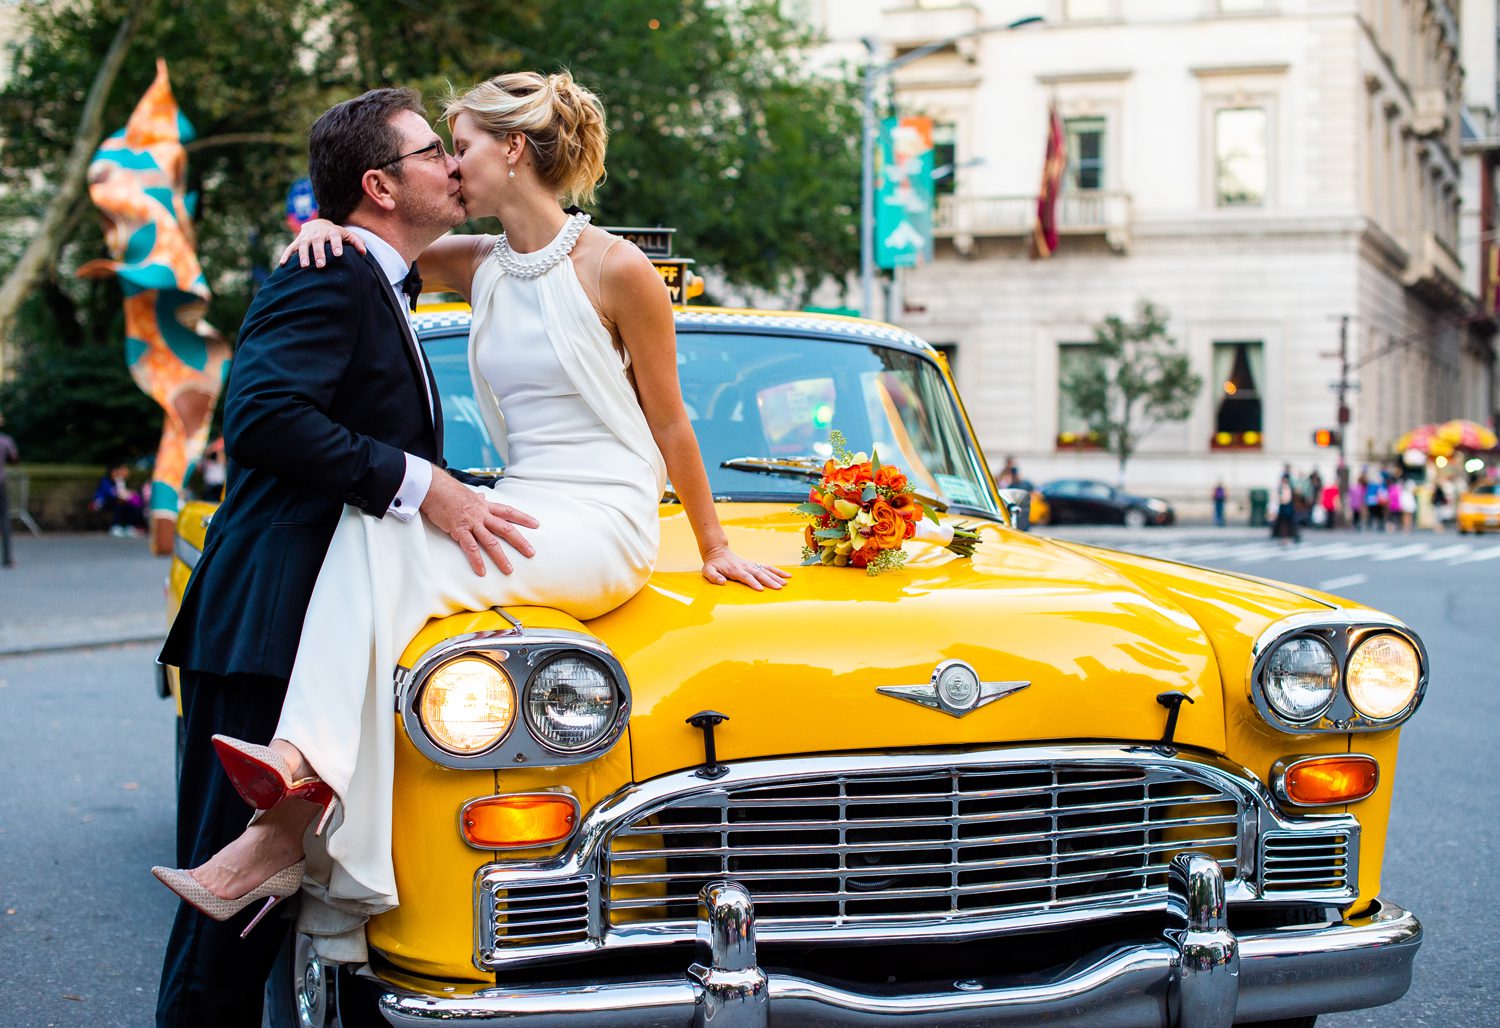 Taxi Cab Wedding Photos